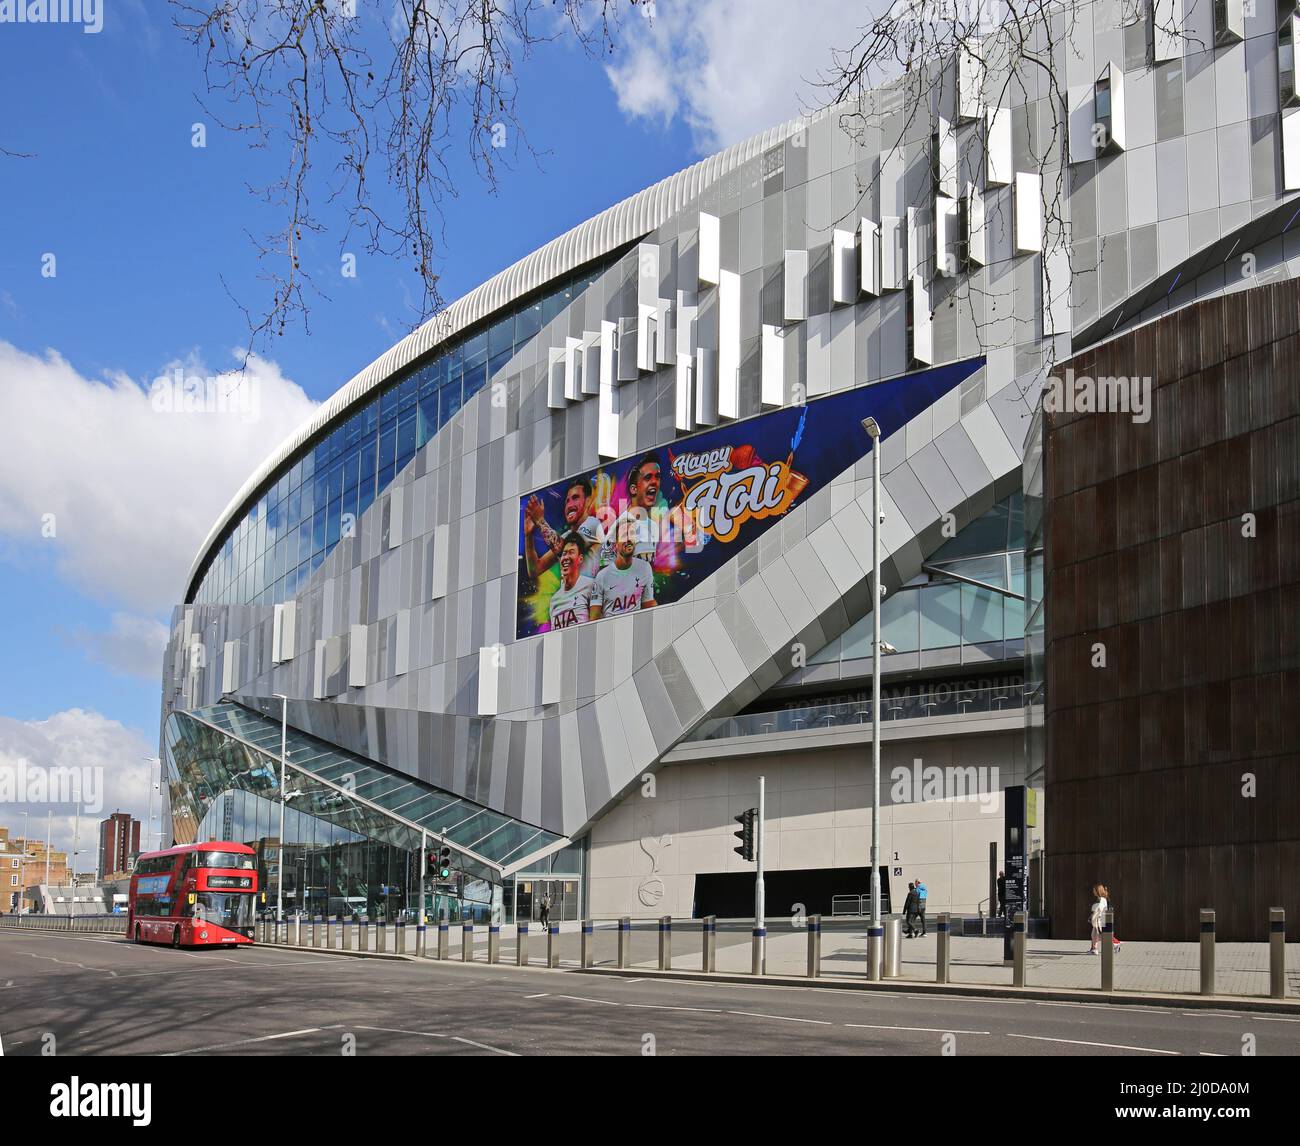 Das neue Stadion des britischen Premier League-Fußballvereins Tottenham Hotspur in der White Hart Lane, London. Entworfen von Architekten bevölkerungsreich, eröffnet im Jahr 2019 Stockfoto